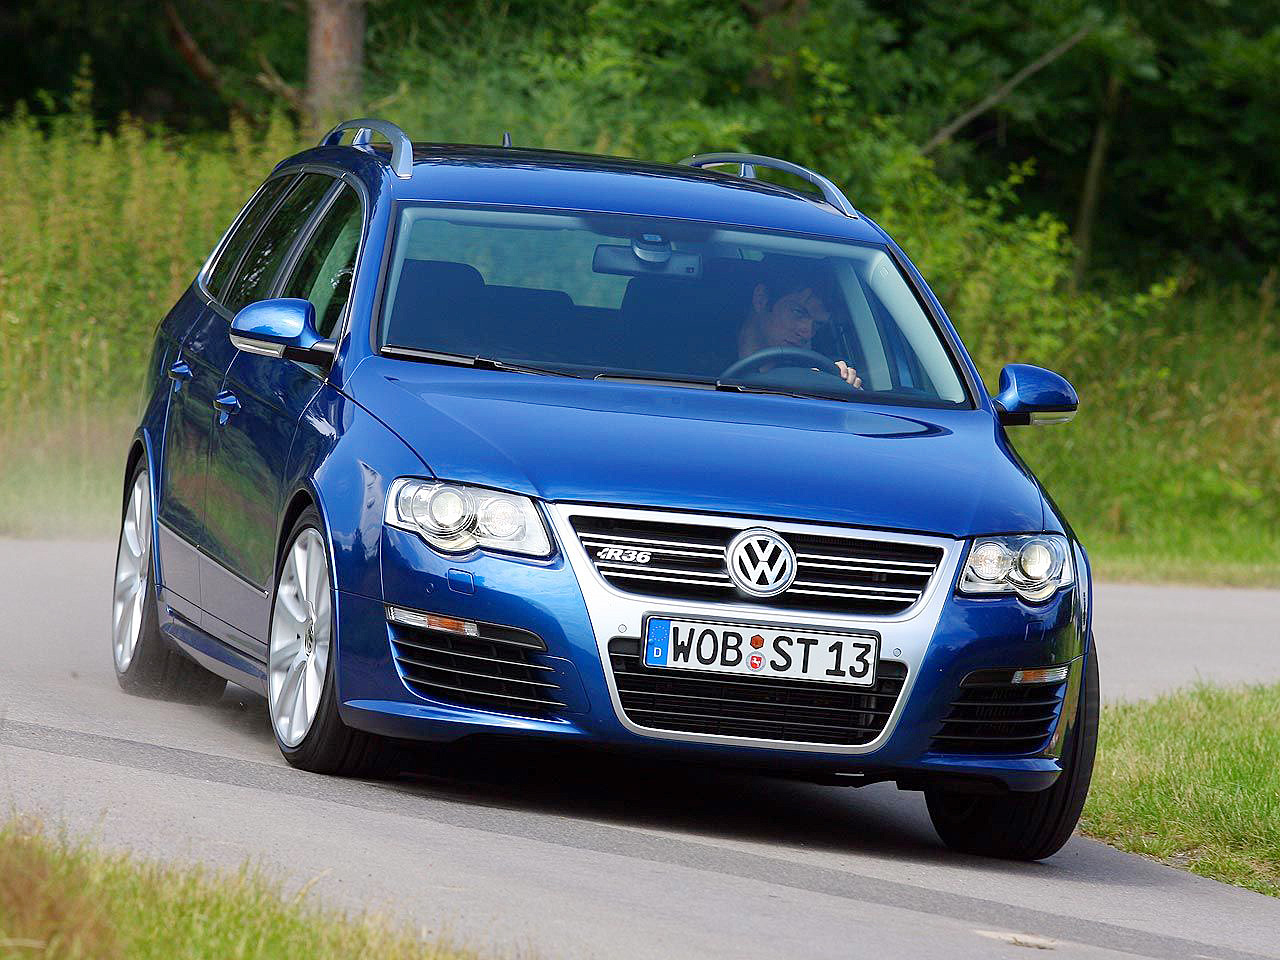 Certificaat Verlaten Ophef VW Passat R36 Variant: Fahrbericht | autozeitung.de